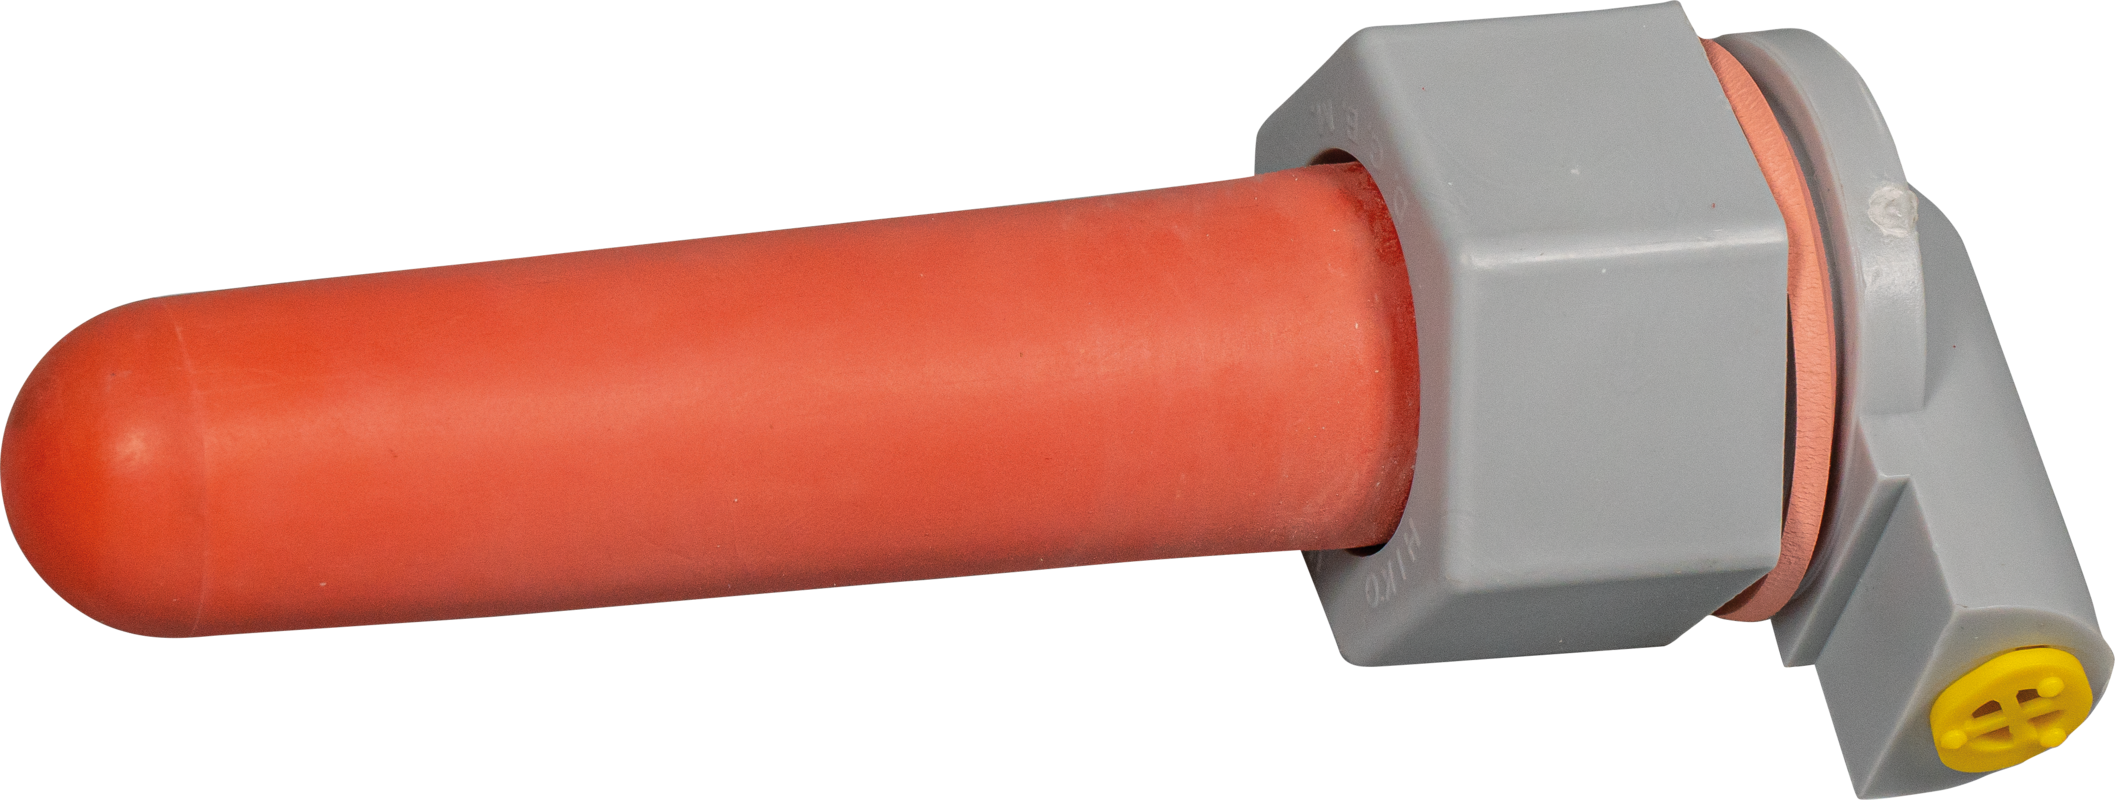 Sauger, mittel (rot) mit Kugelventil für Nuckel-Tränkeeimer und Kälber-Tränkeflasche Profi